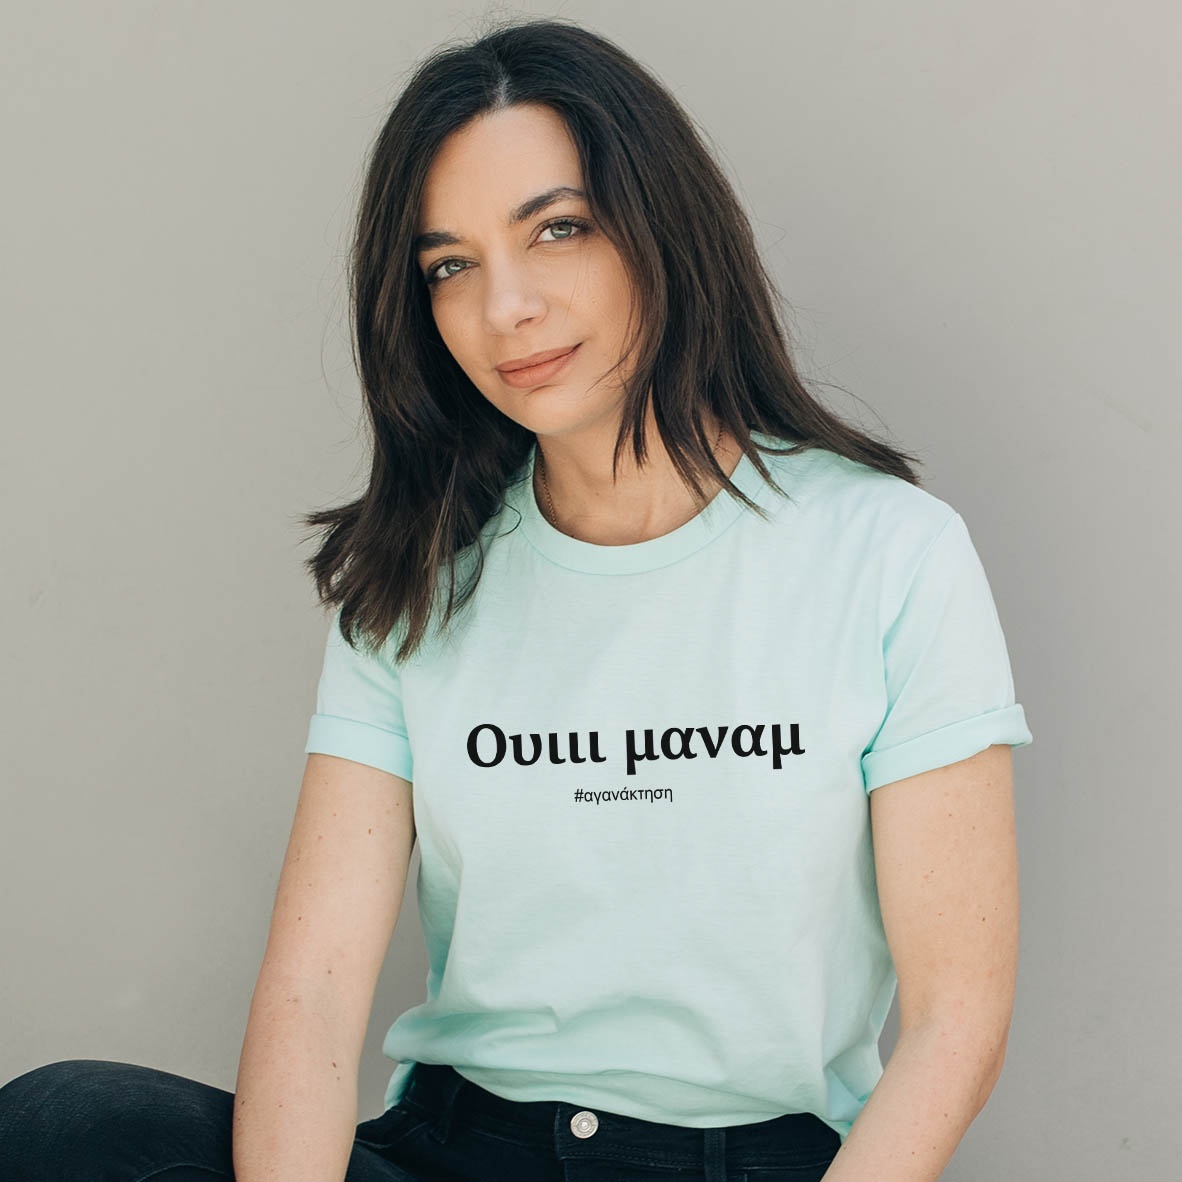 Ουιιι μαναμ -  Organic Vegan T-Shirt Unisex